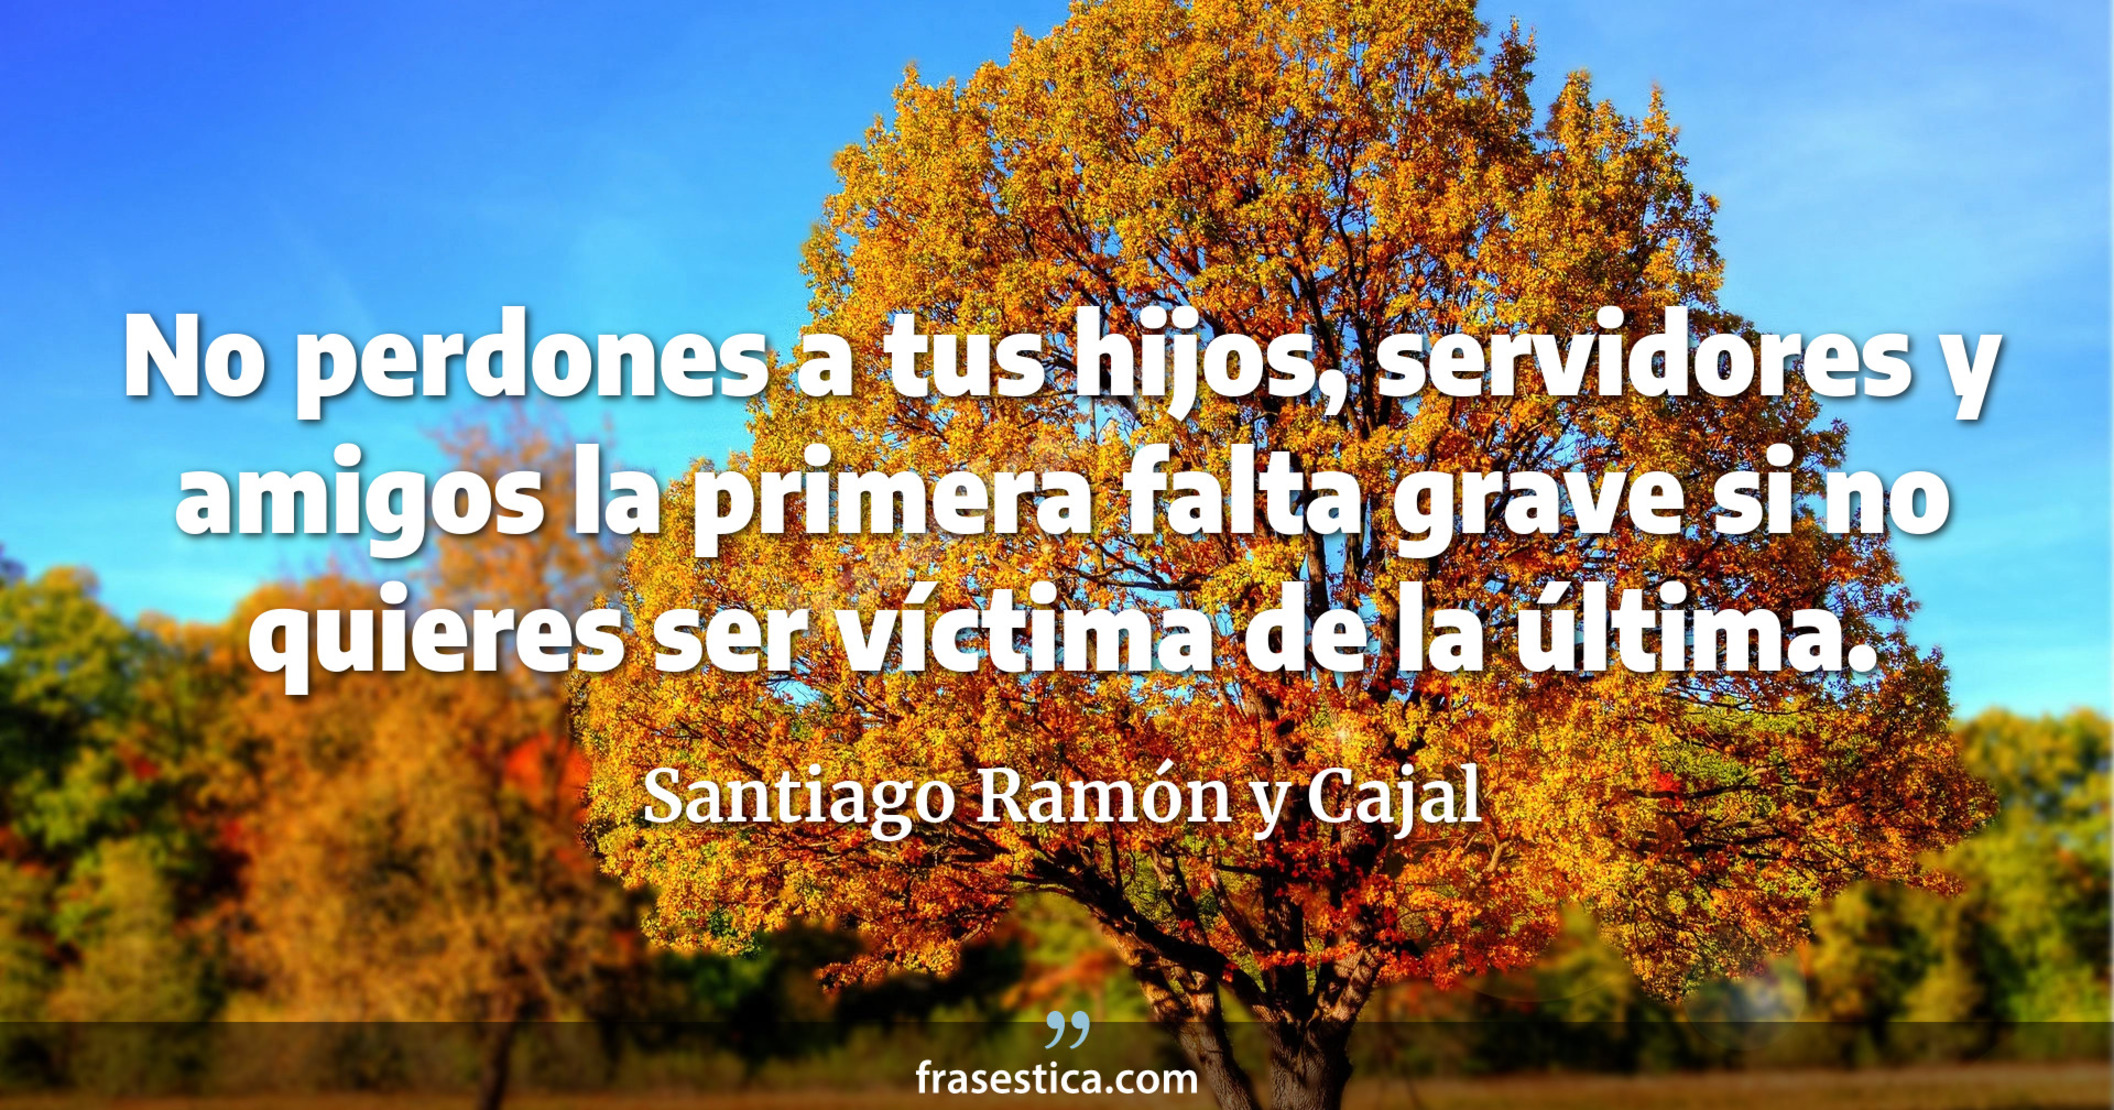 No perdones a tus hijos, servidores y amigos la primera falta grave si no quieres ser víctima de la última. - Santiago Ramón y Cajal